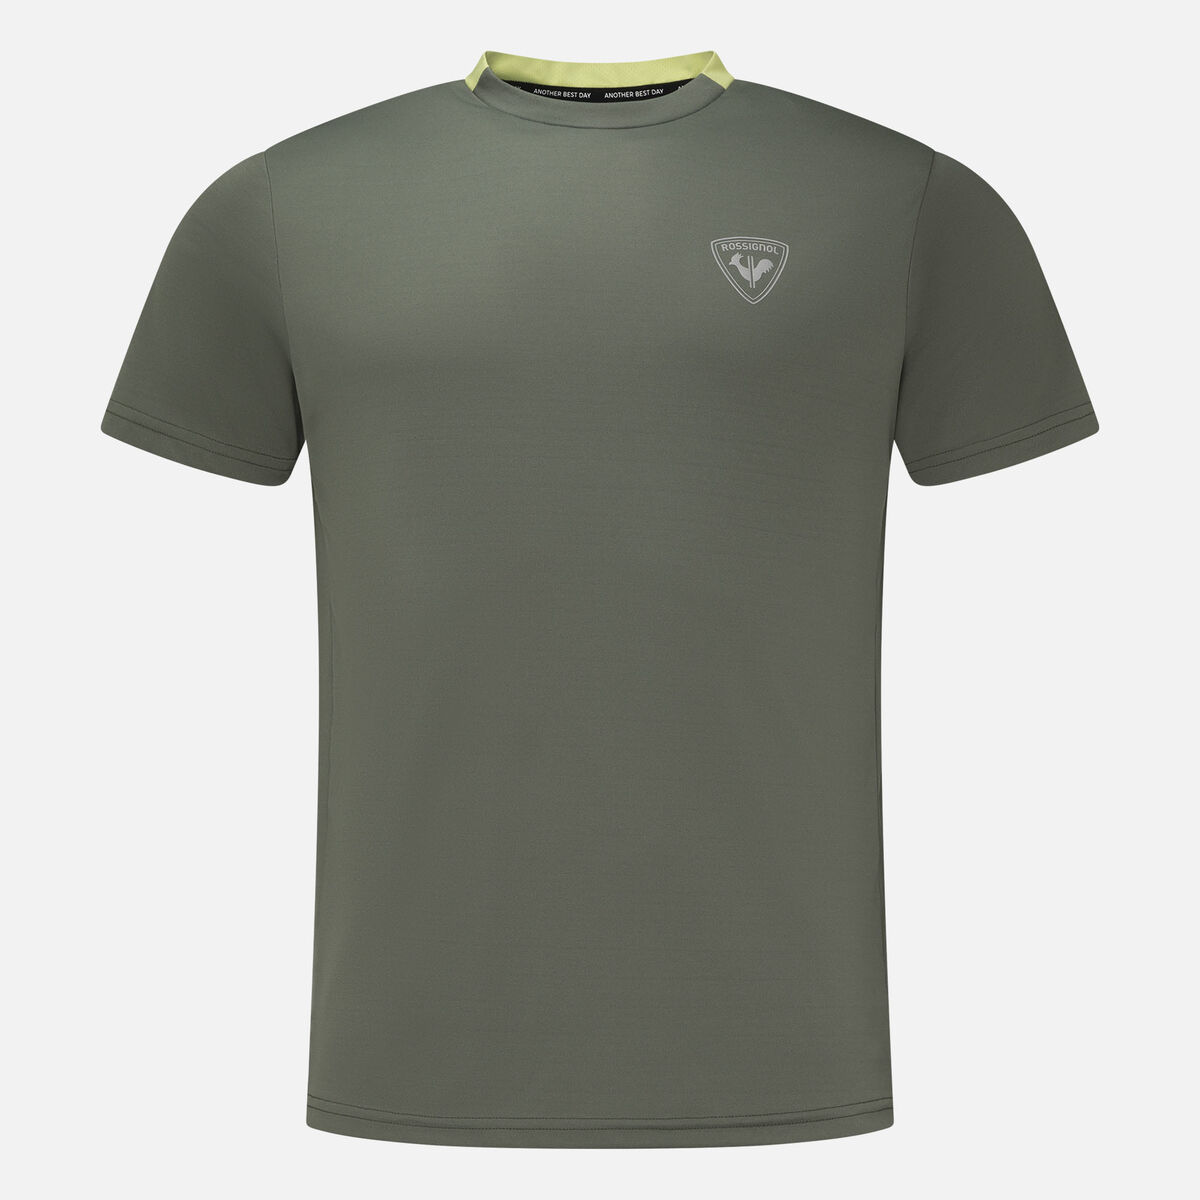 Rossignol Camiseta Active para hombre green